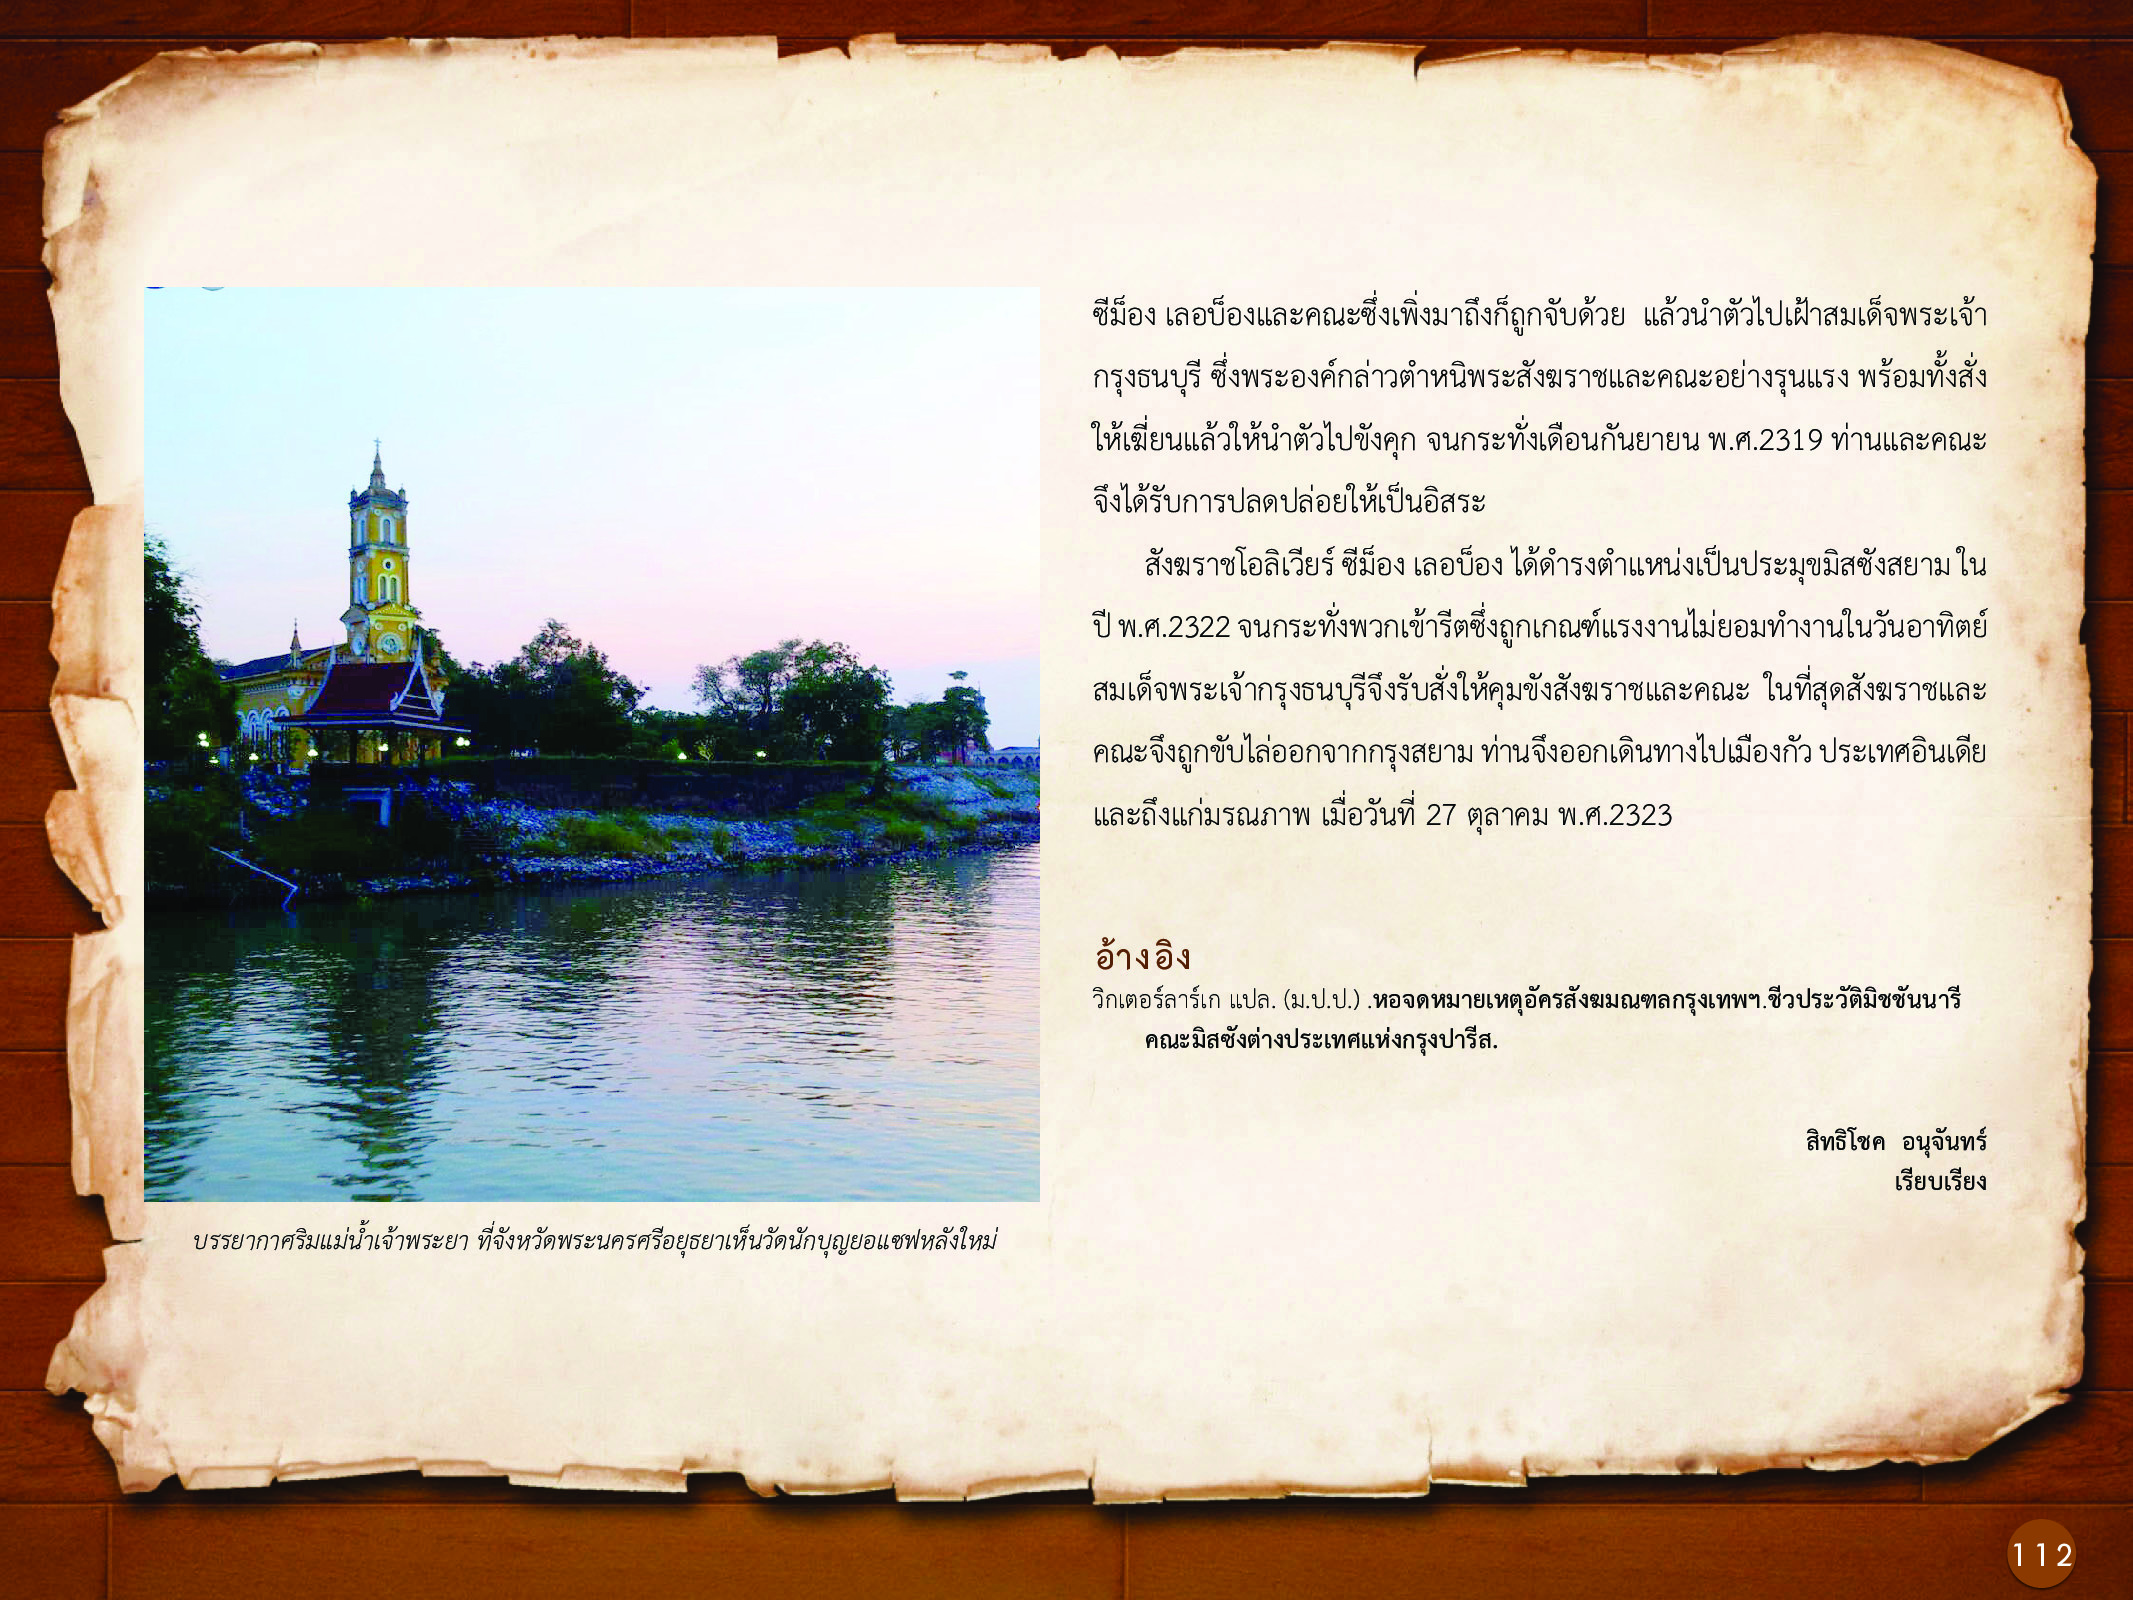 ประวัติศาสตร์กรุงธนบุรี ./images/history_dhonburi/112.jpg